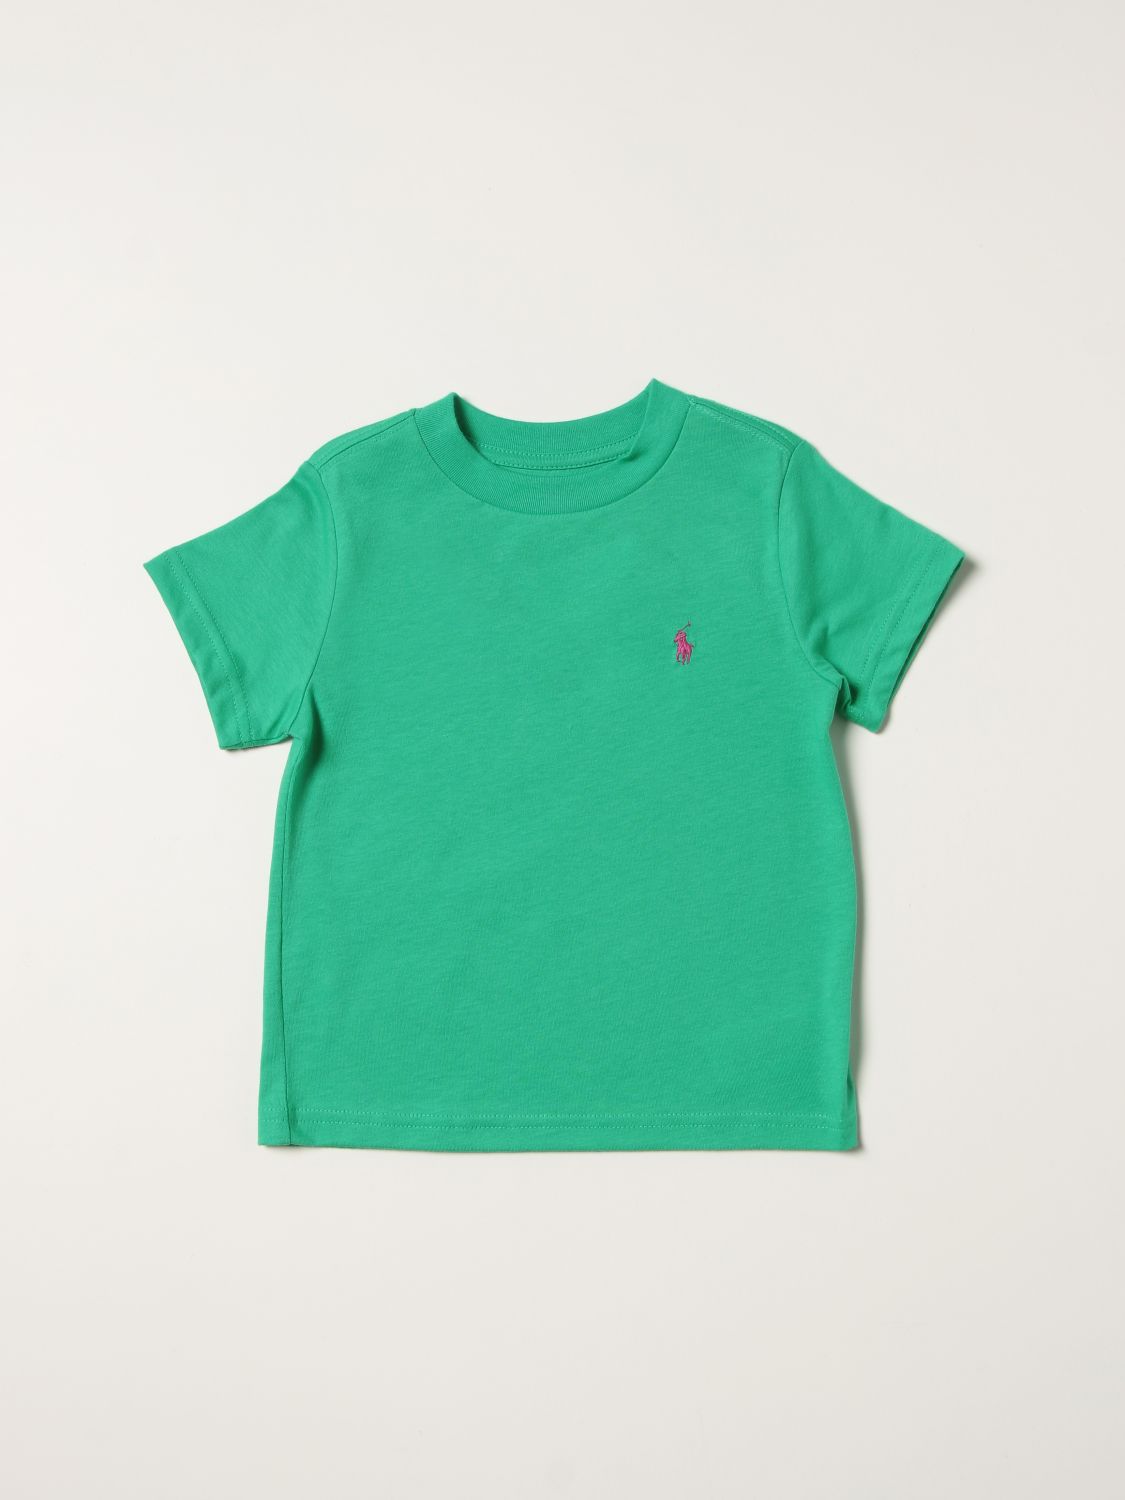 Tシャツ ポロラルフローレン: Tシャツ Polo Ralph Lauren 男の子 グリーン 1